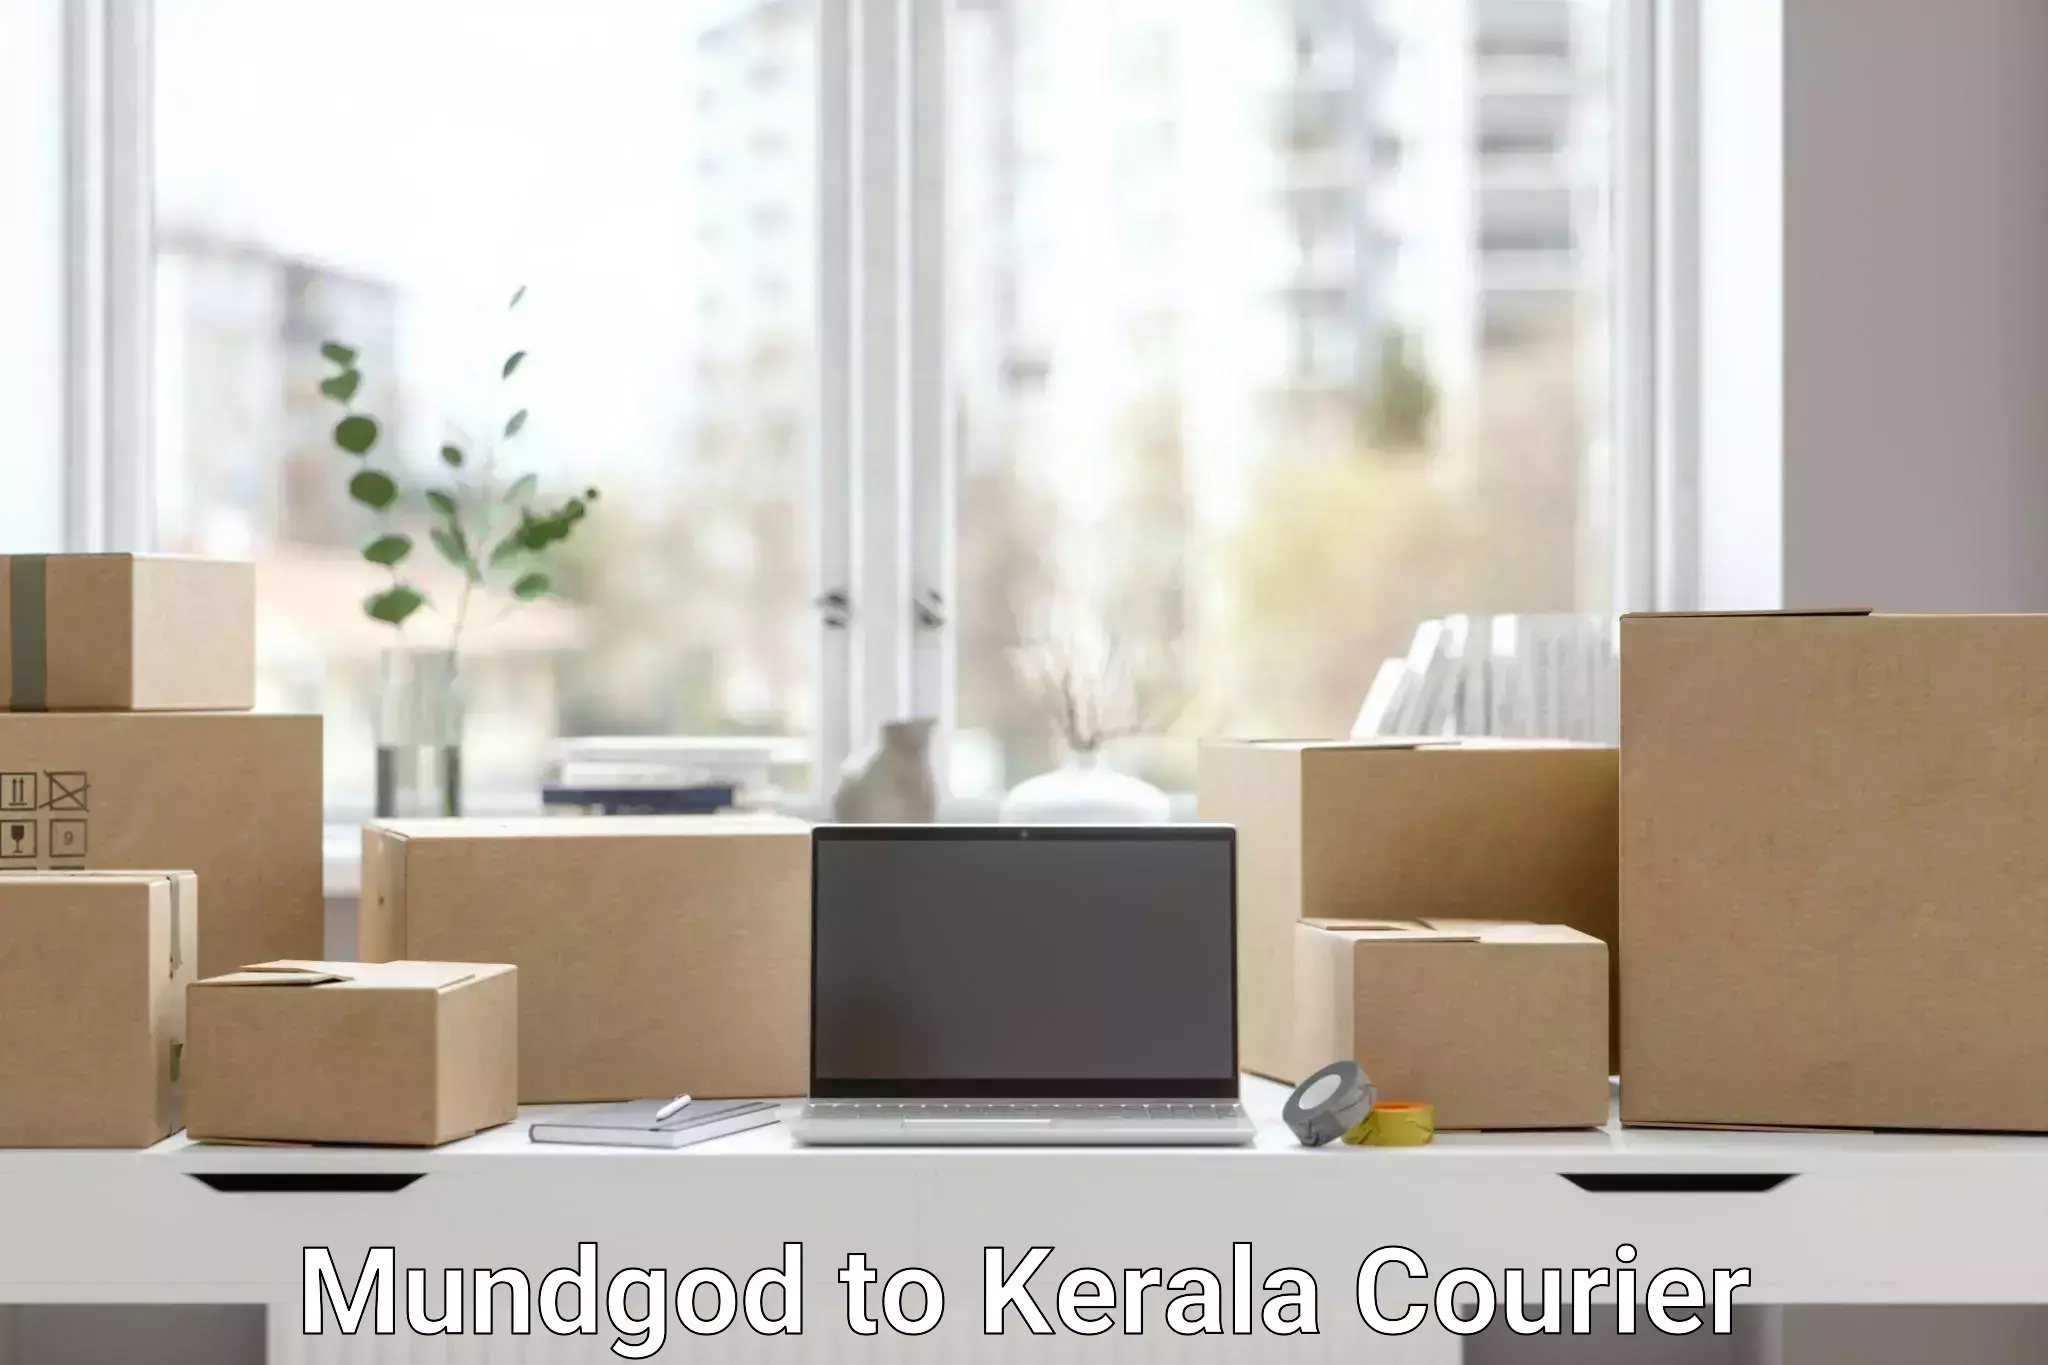 High-capacity parcel service Mundgod to Kiliyanthara